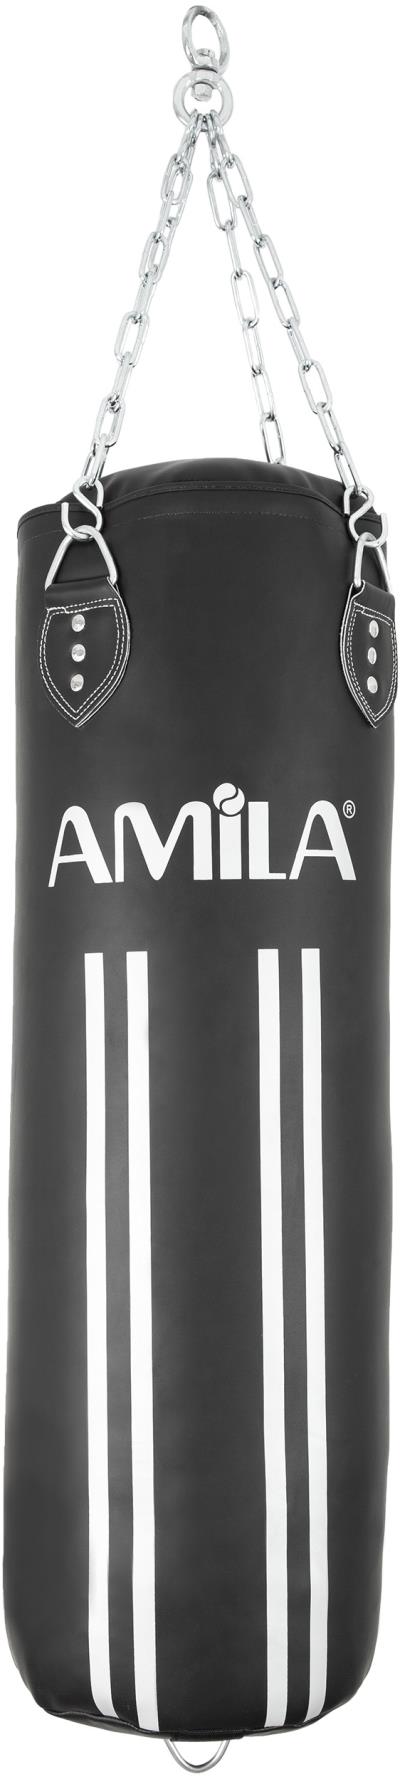 Amila Σάκος Από Pu, 90X30 (43815) Μαύρο